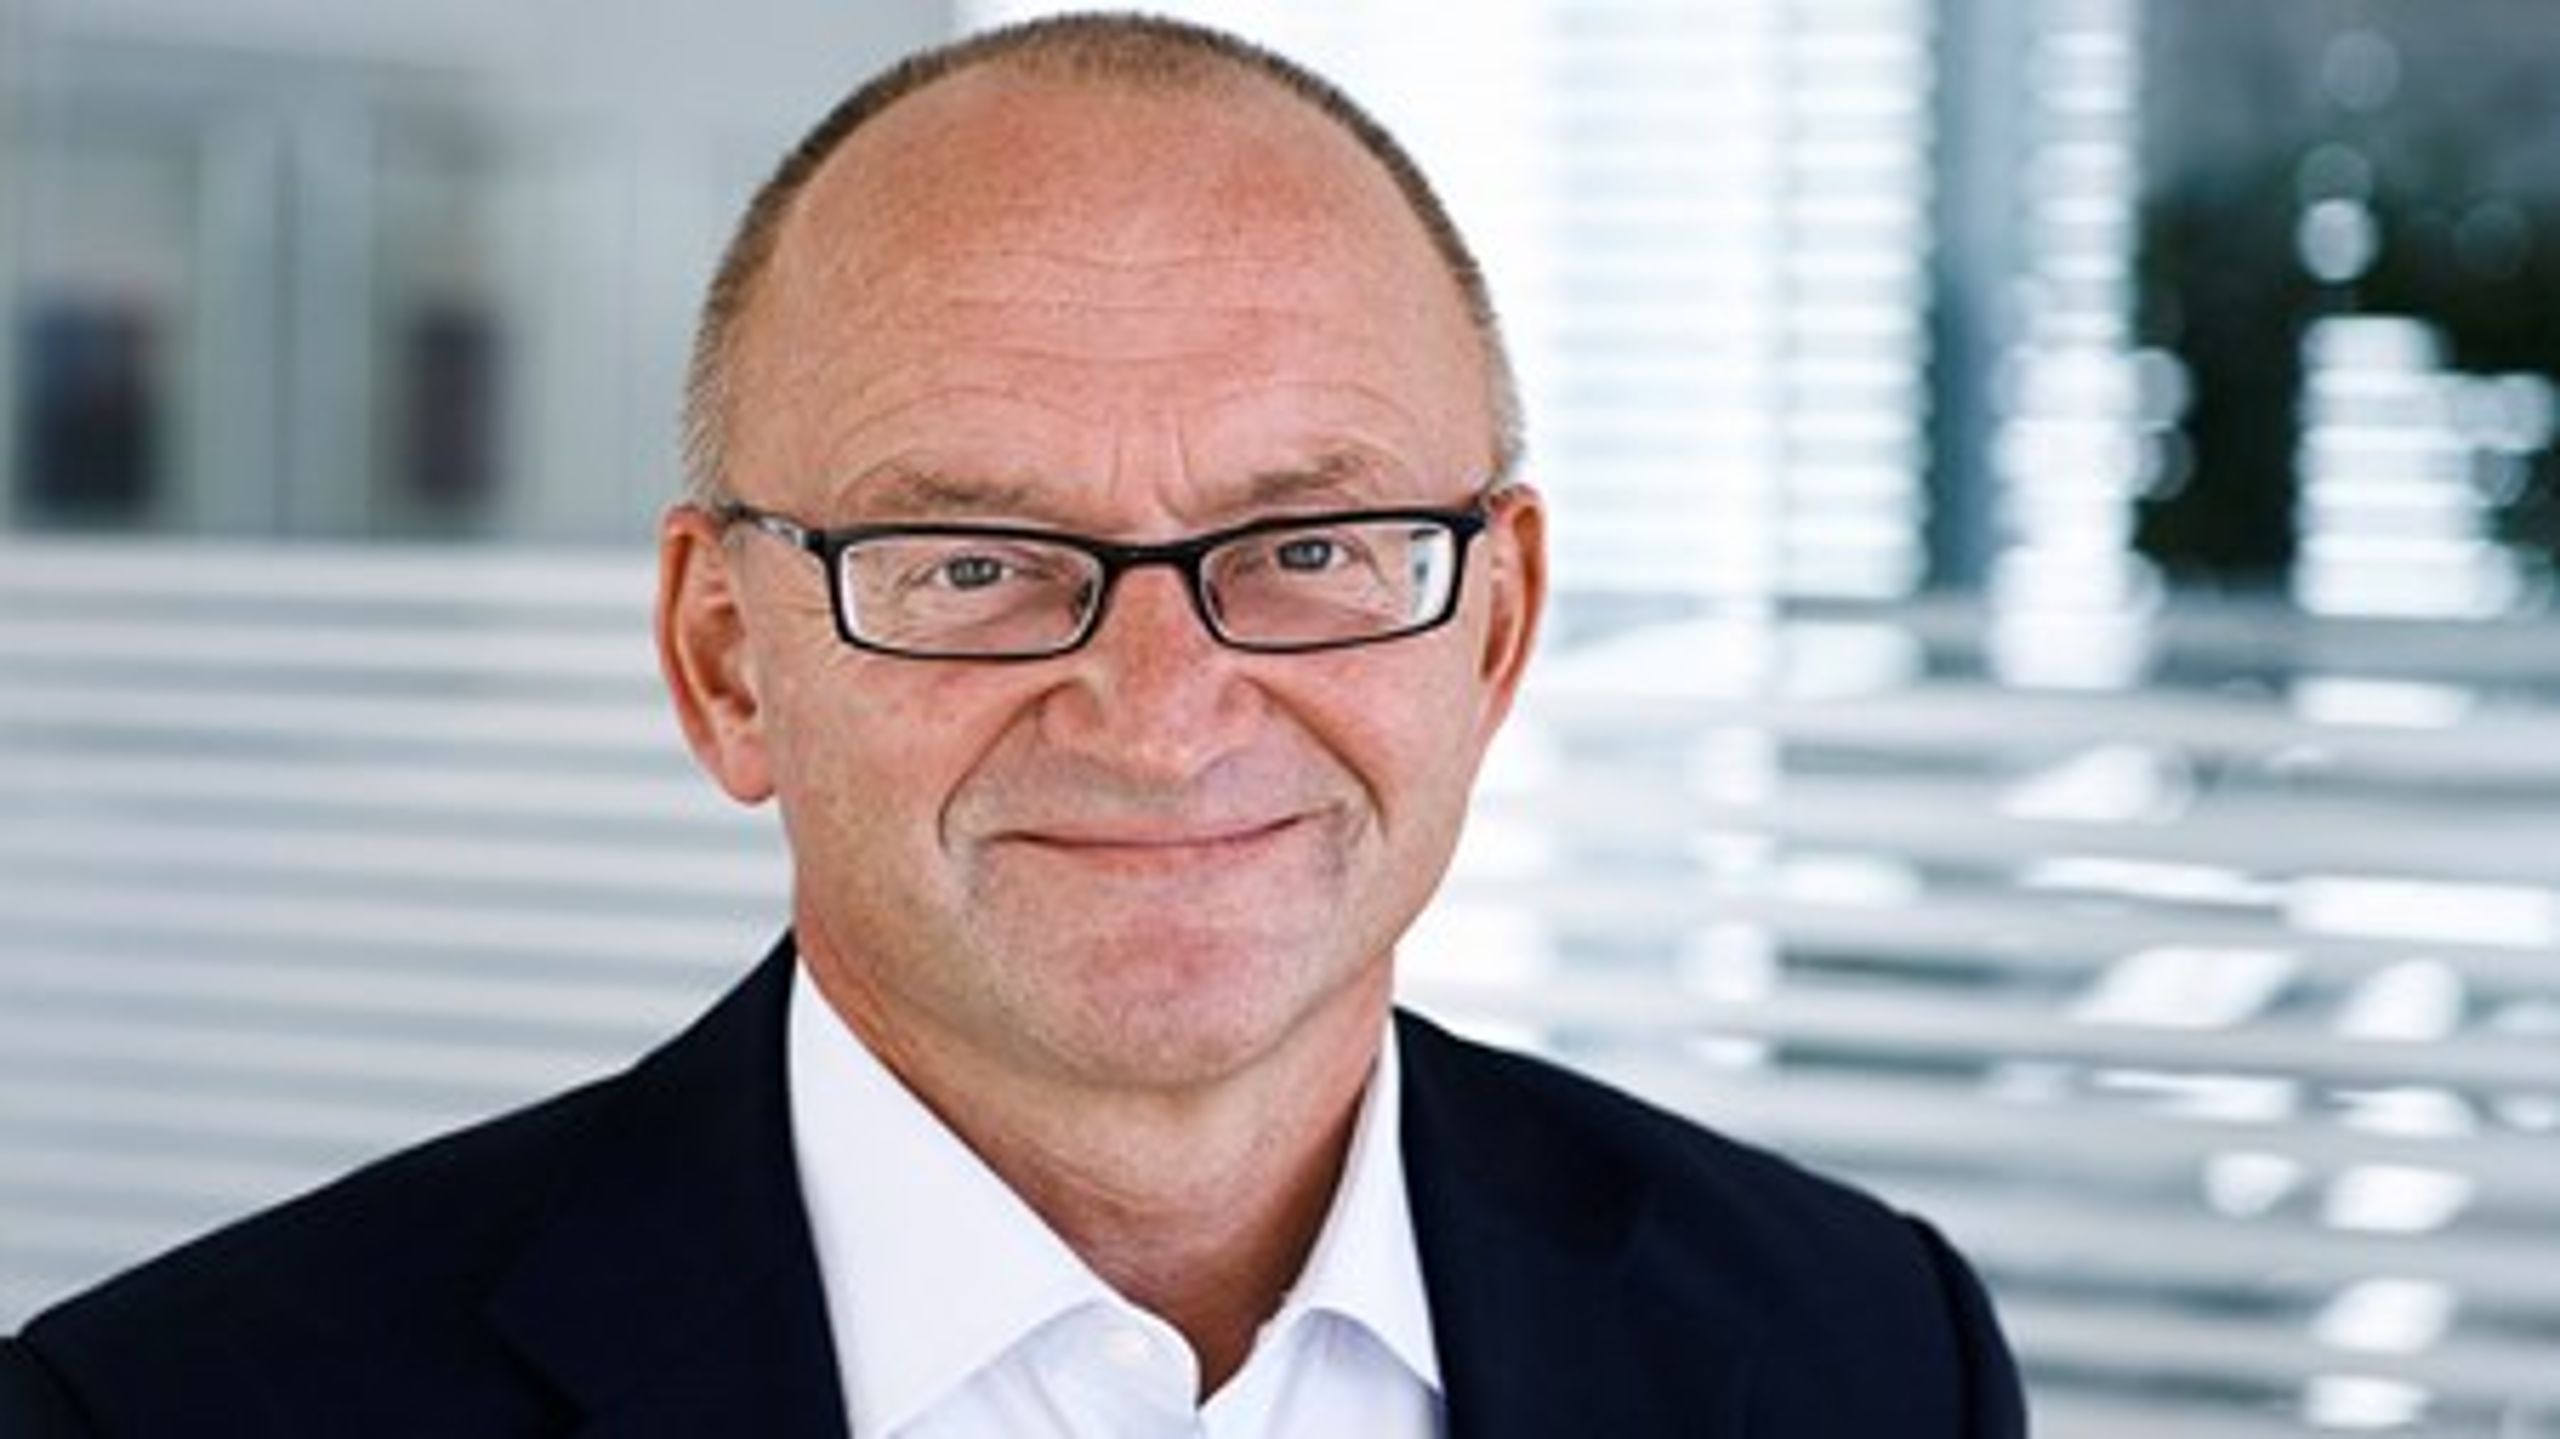 Administrerende direktør i PensionDanmark, Torben Möger Pedersen, opfordrer til, at danskernes længere udsigt til pension bliver støttet af forebyggende foranstaltninger i forhold til både sundhed og kompetencer.